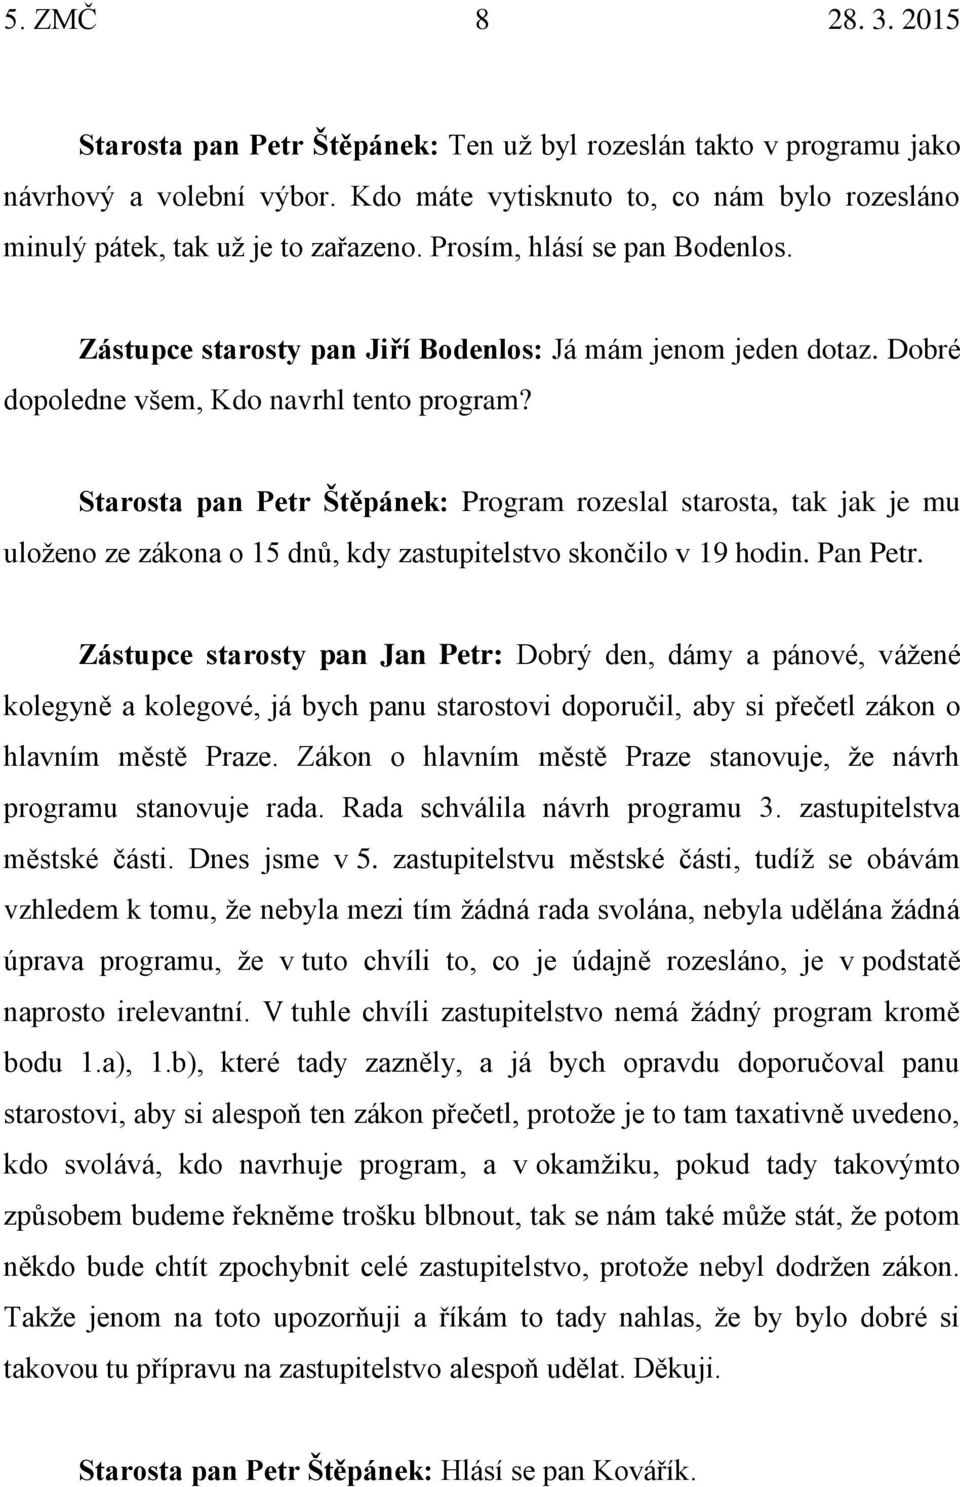 Starosta pan Petr Štěpánek: Program rozeslal starosta, tak jak je mu uloženo ze zákona o 15 dnů, kdy zastupitelstvo skončilo v 19 hodin. Pan Petr.